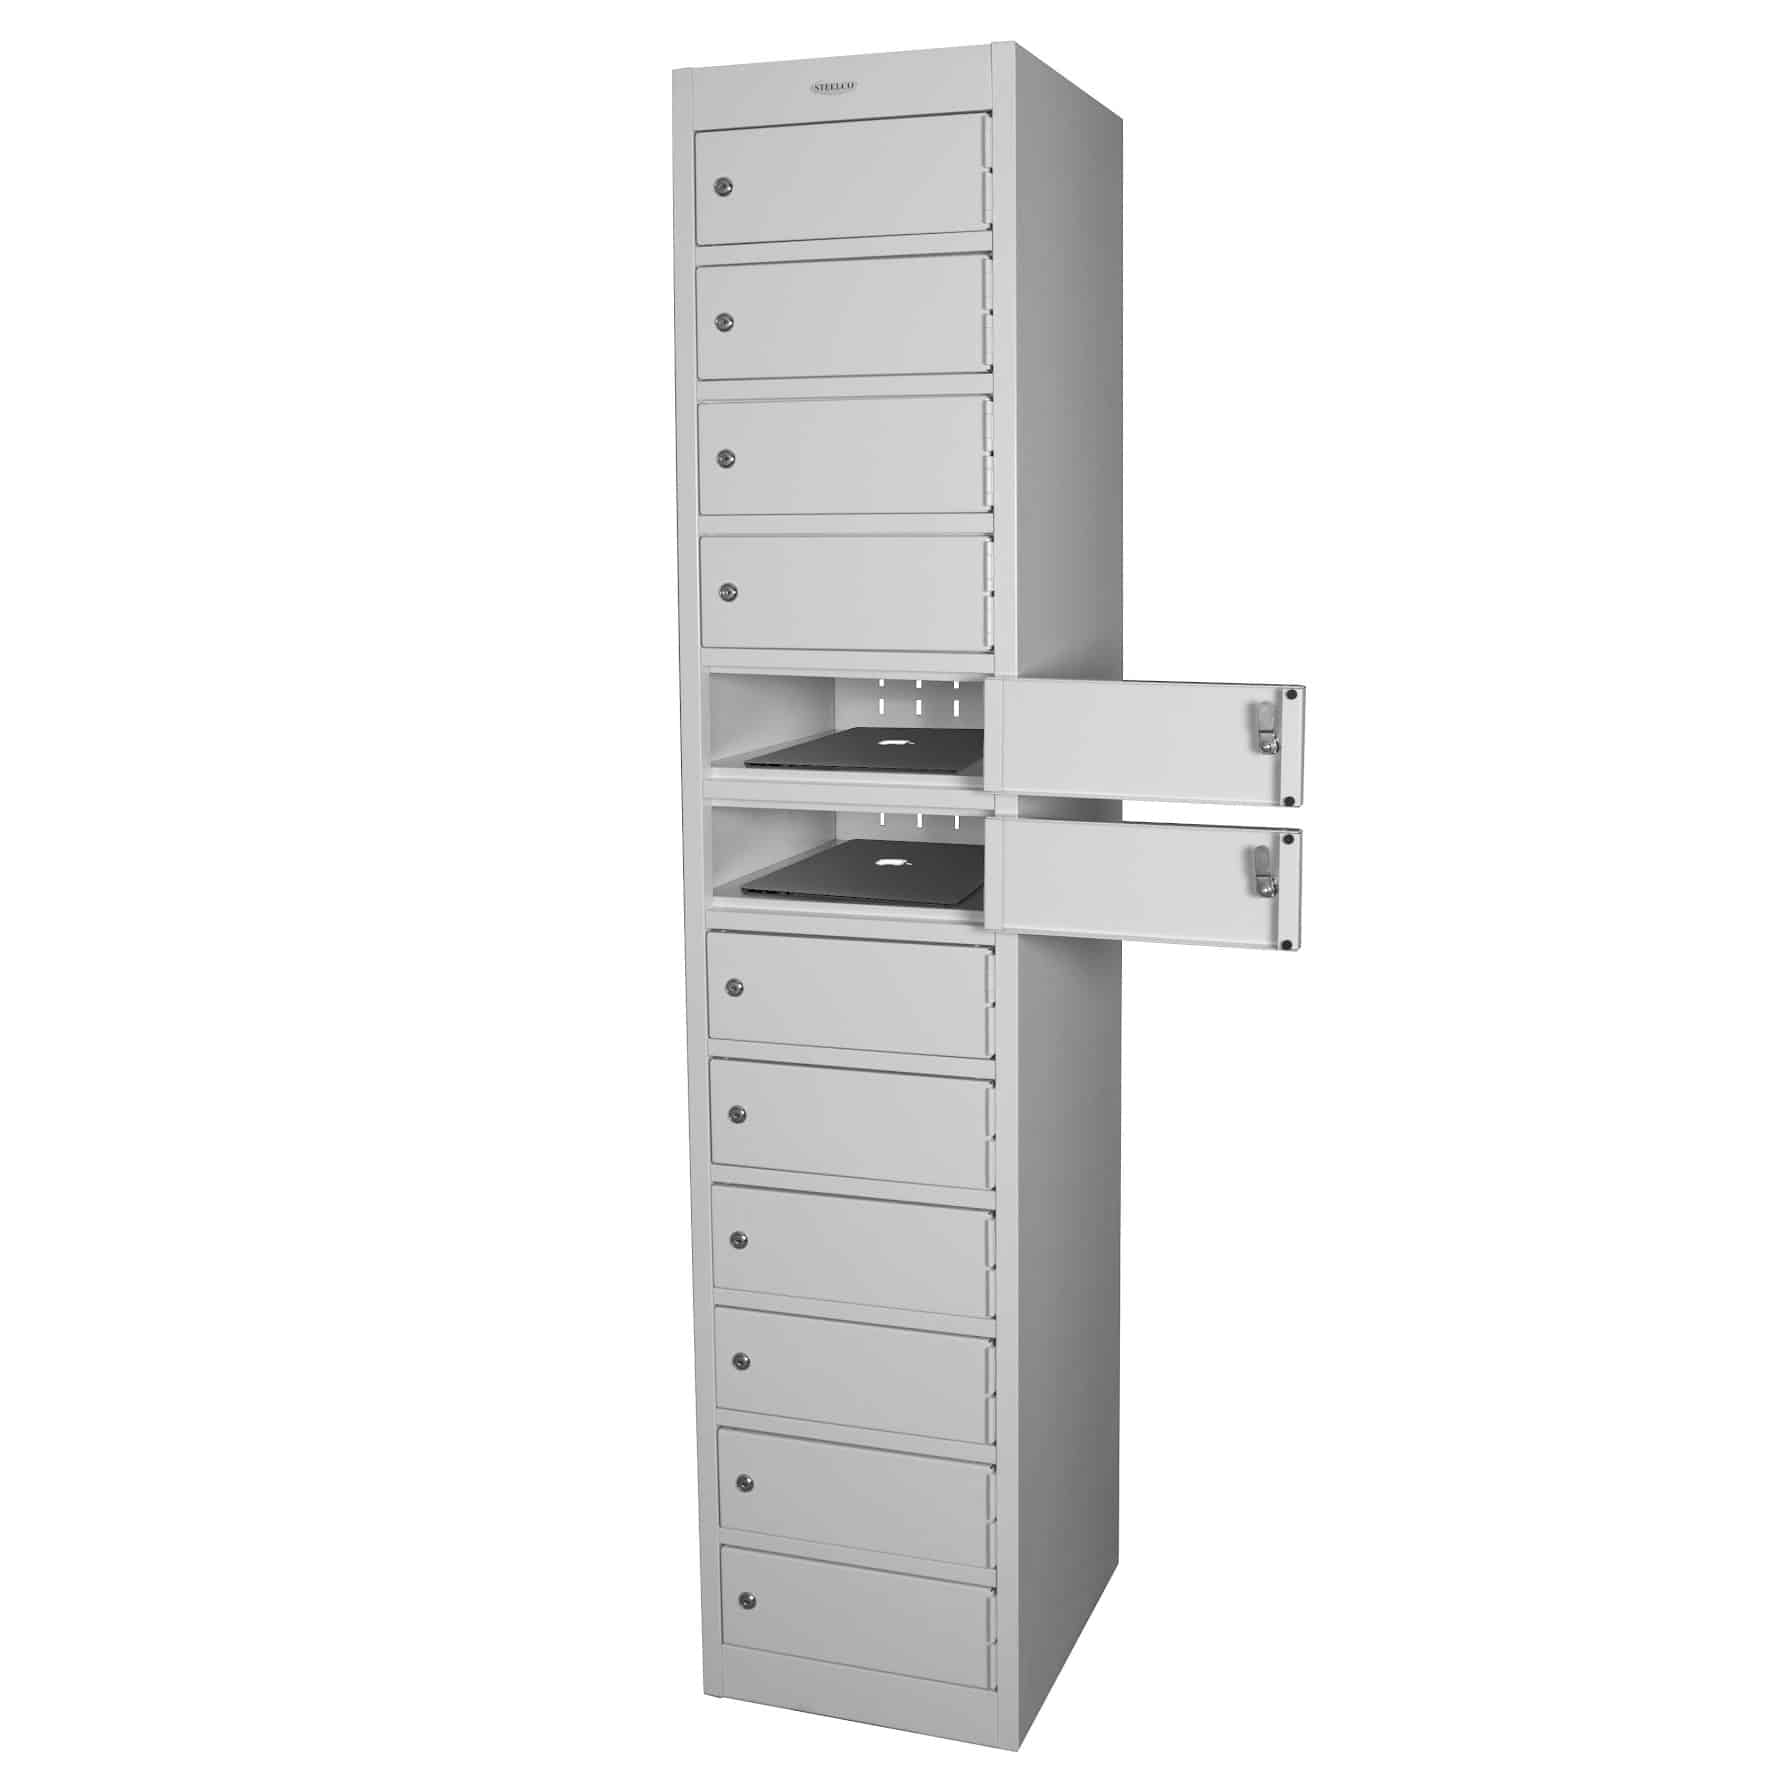 Twelve door steel locker open - Premier Lockers